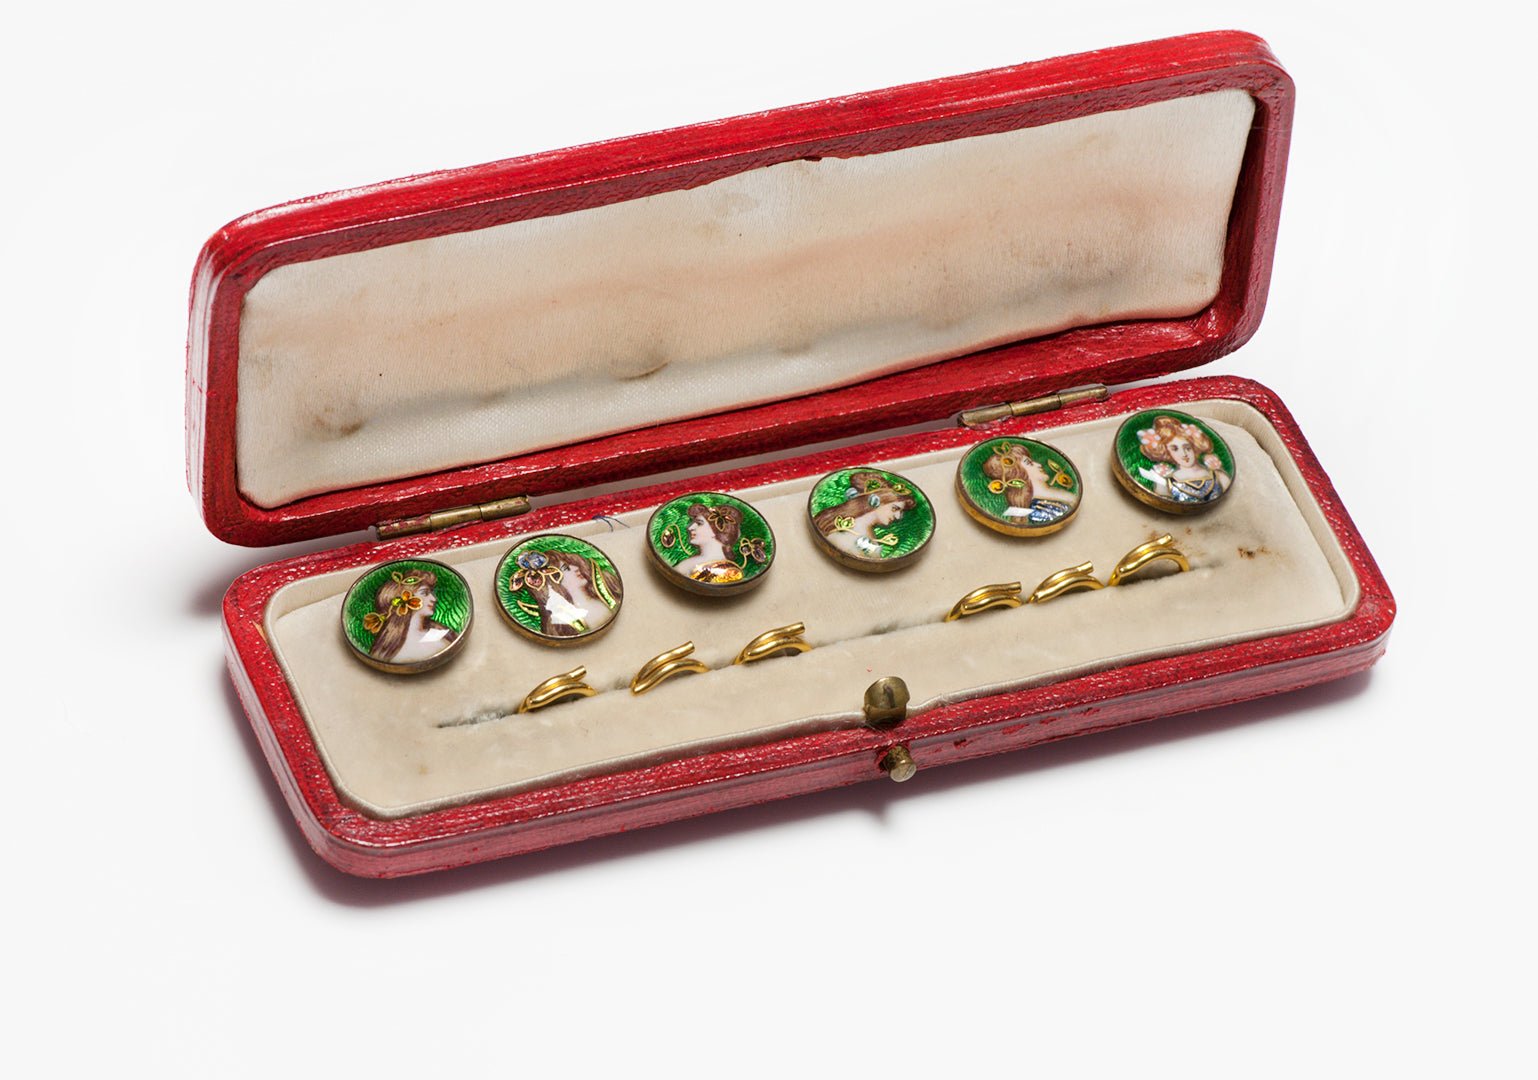 Antique Art Nouveau Gold Enamel Buttons